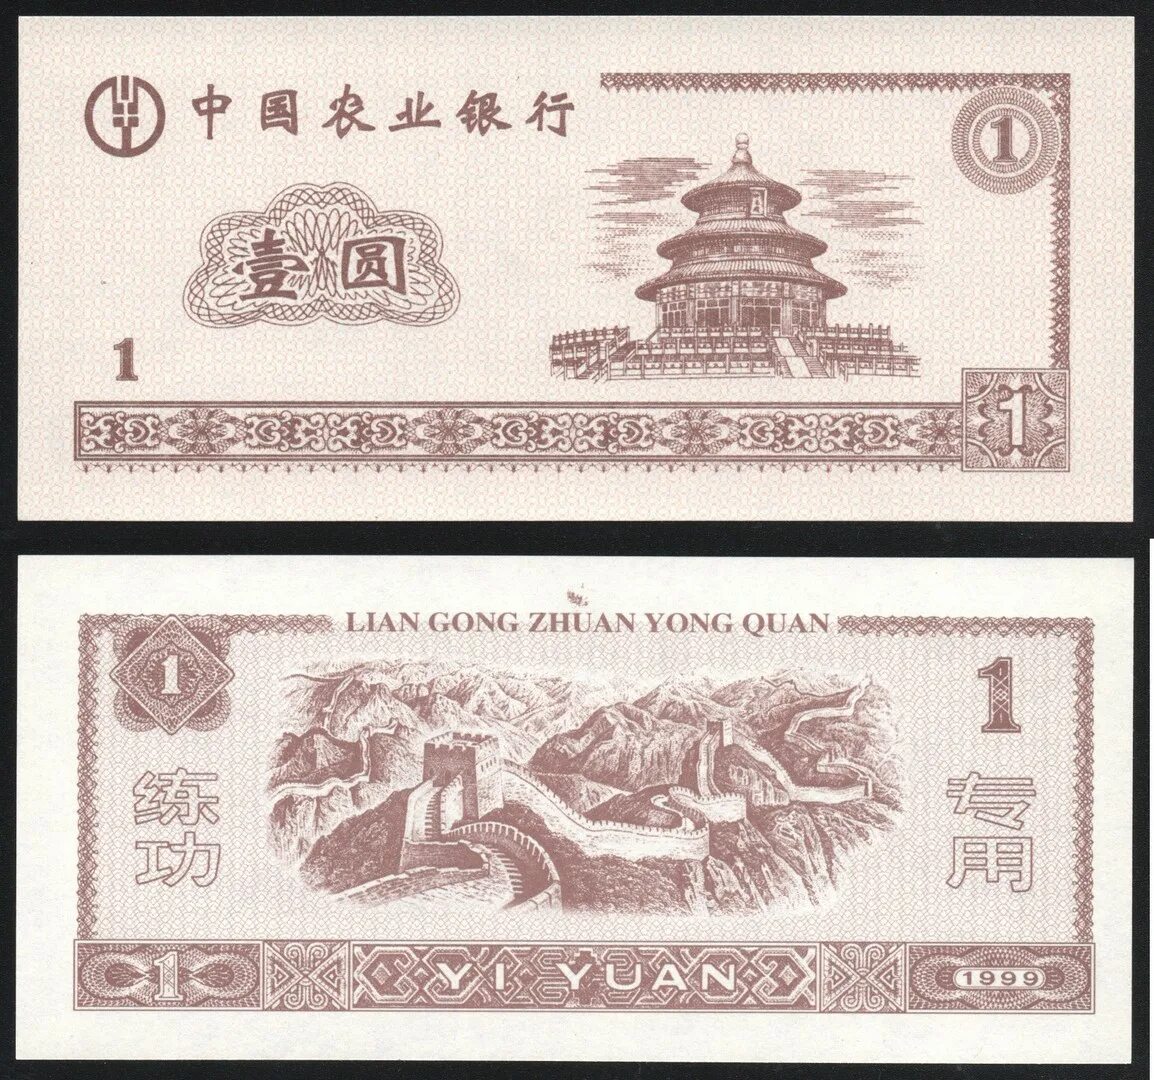 Китайские банкноты 1 Yuan 1999. Банкнота Китая Lian Gong. 1 Юань 1999 года. Китайская валюта в рублях. Миллион юаней это сколько рублей